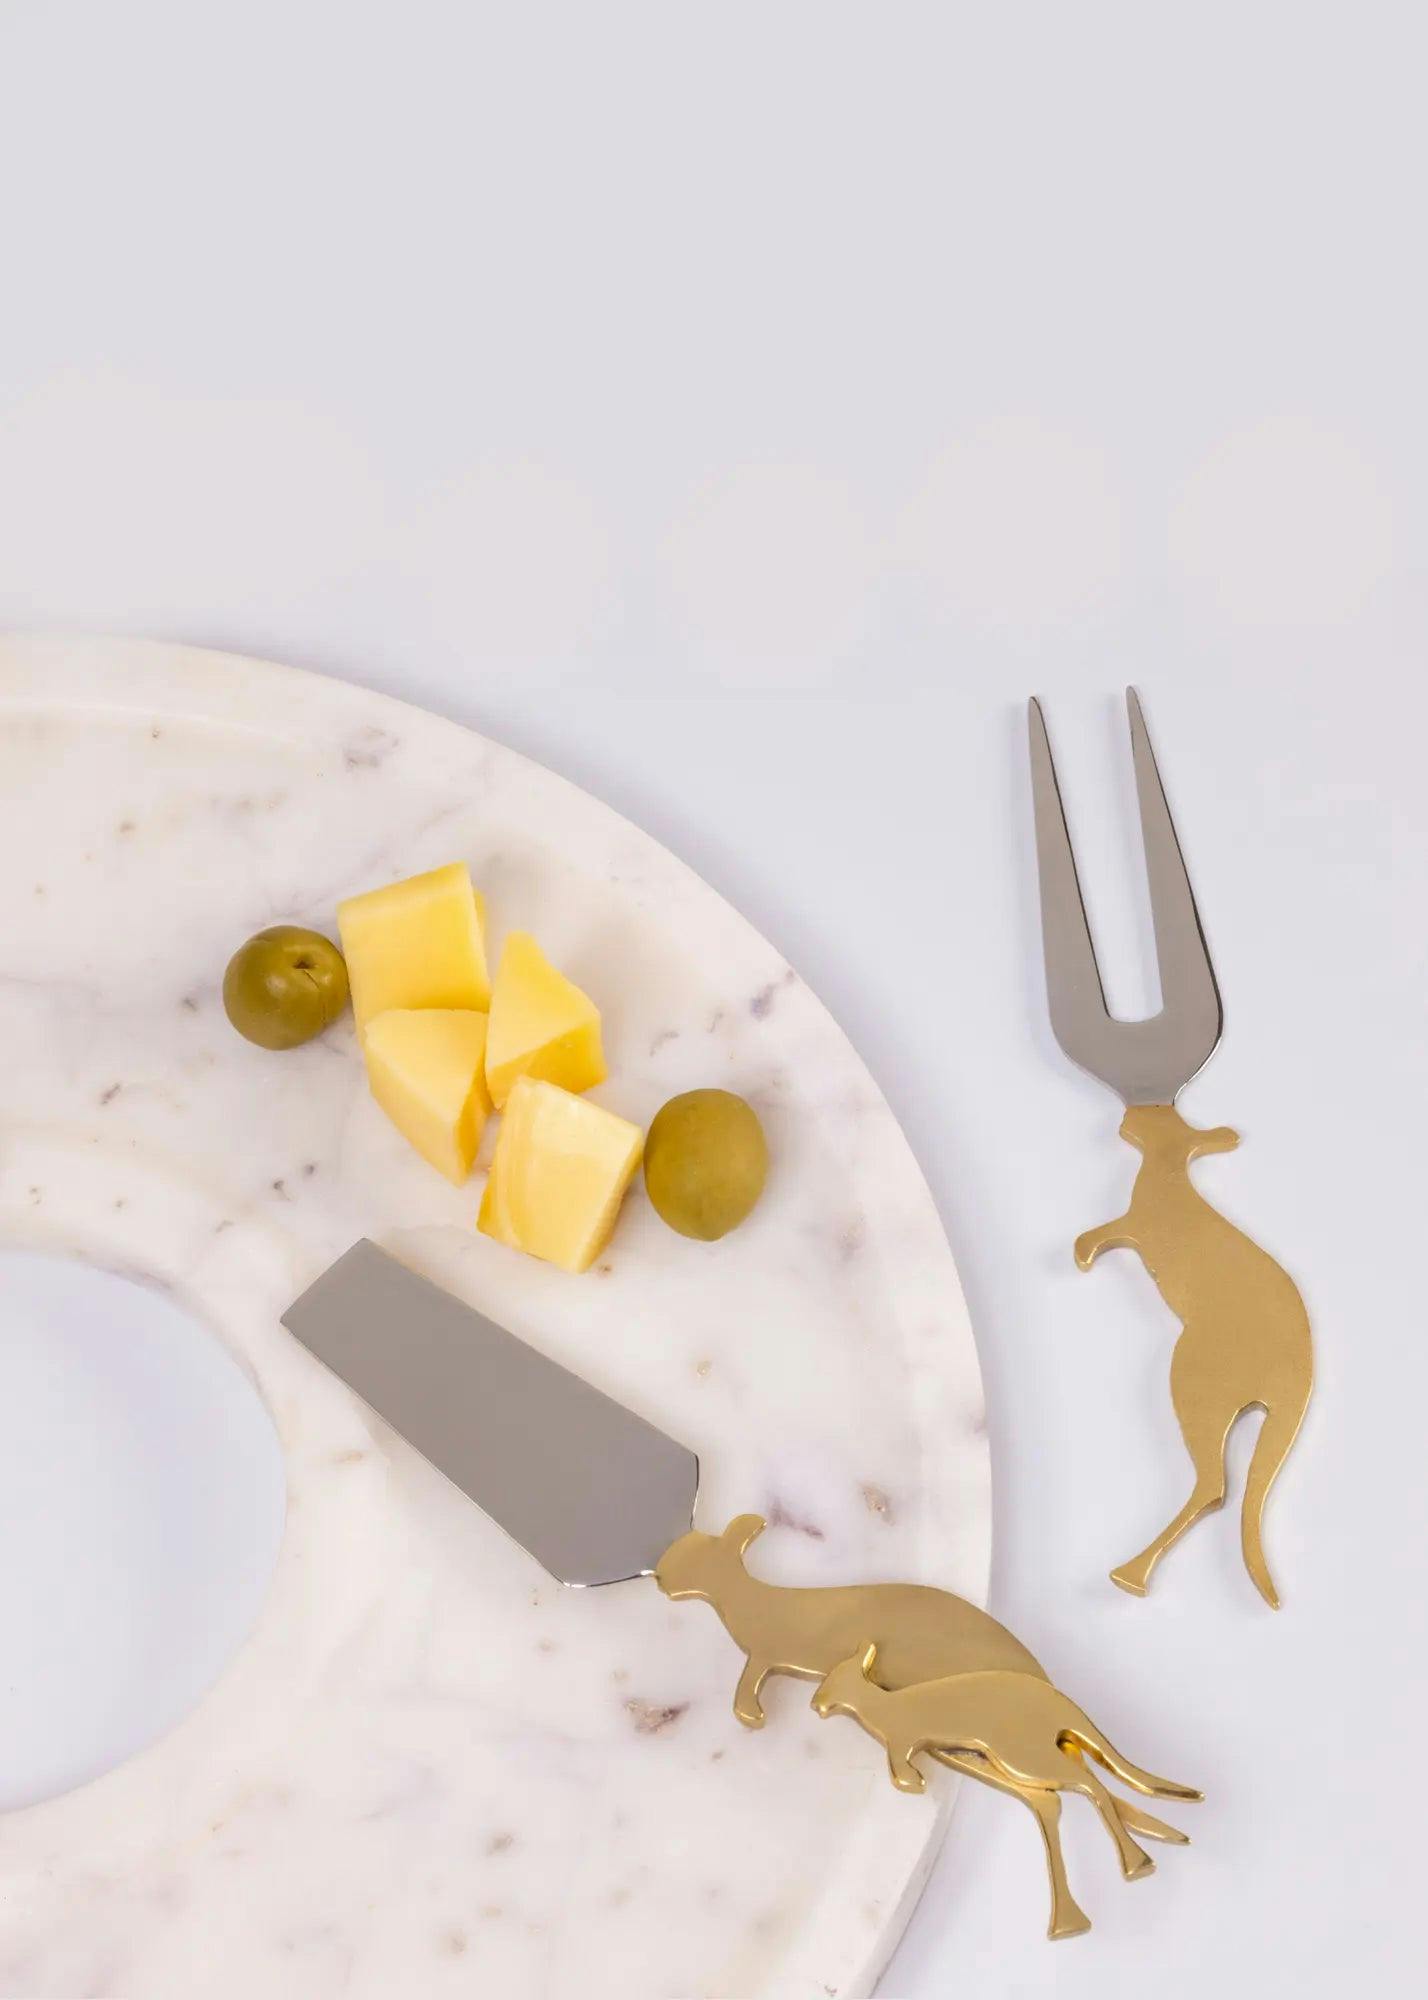 Wallaroo Cheese Knives, a product by Gado Living